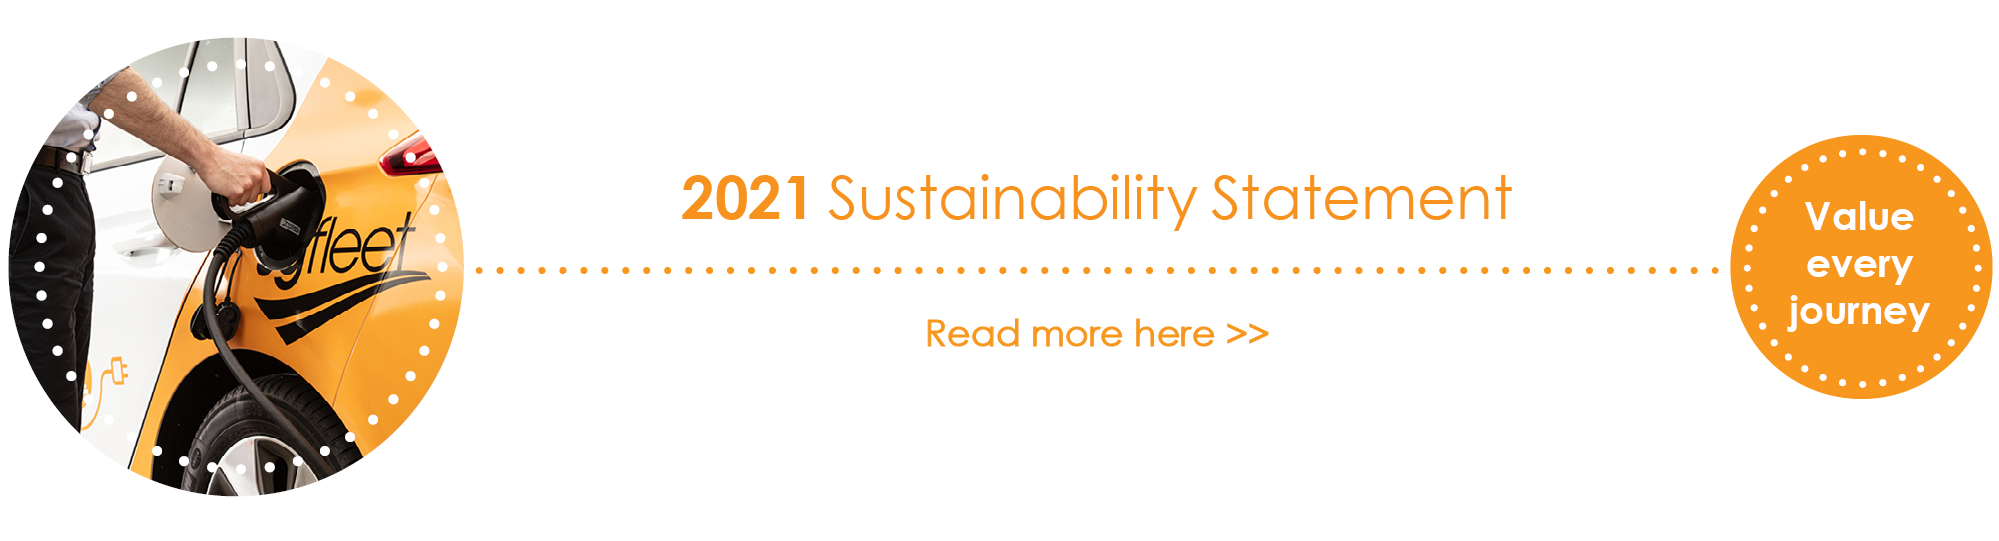 SG Fleet Group Sustainability Statement 2021 website banner